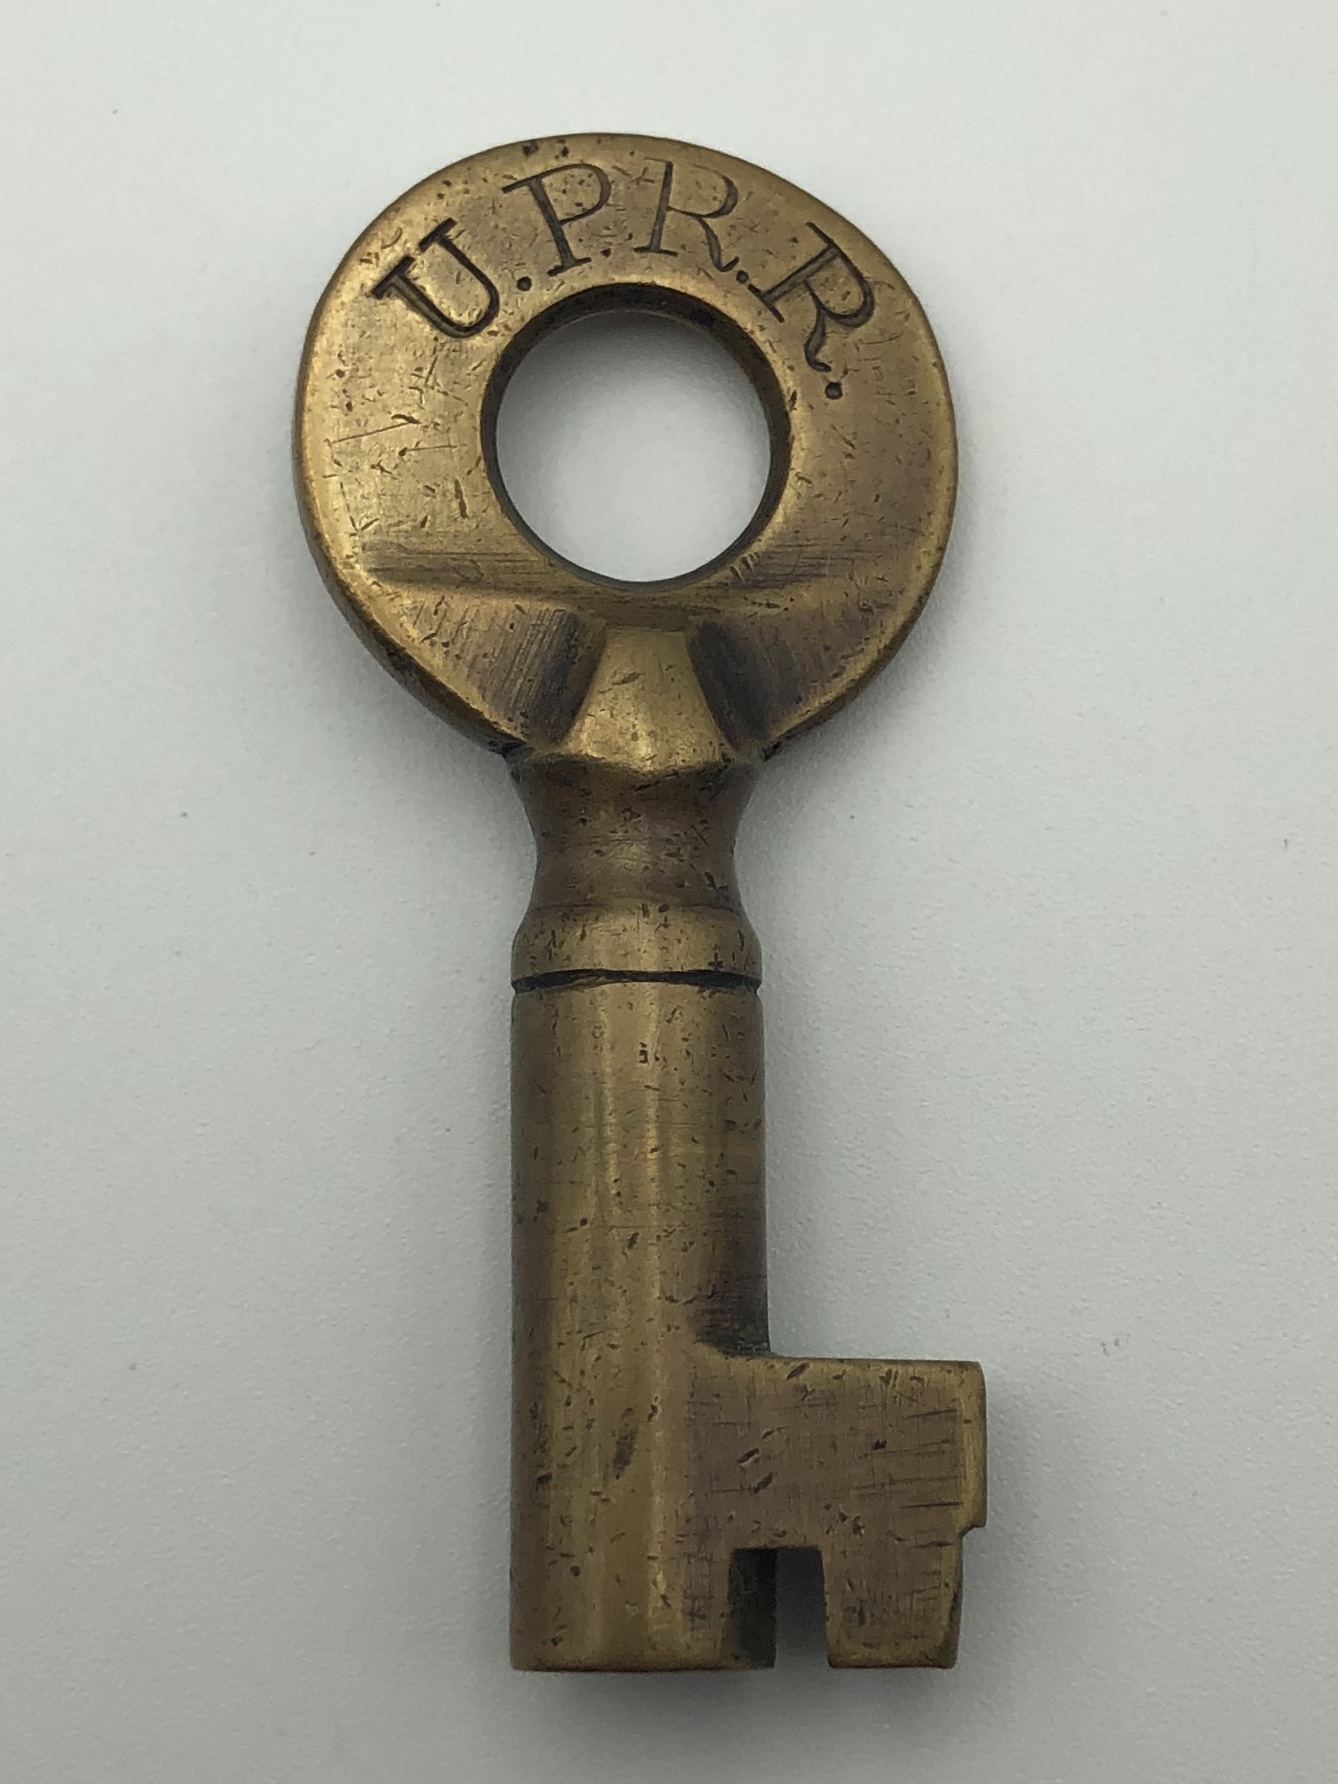 Union Pacific Railroad Key